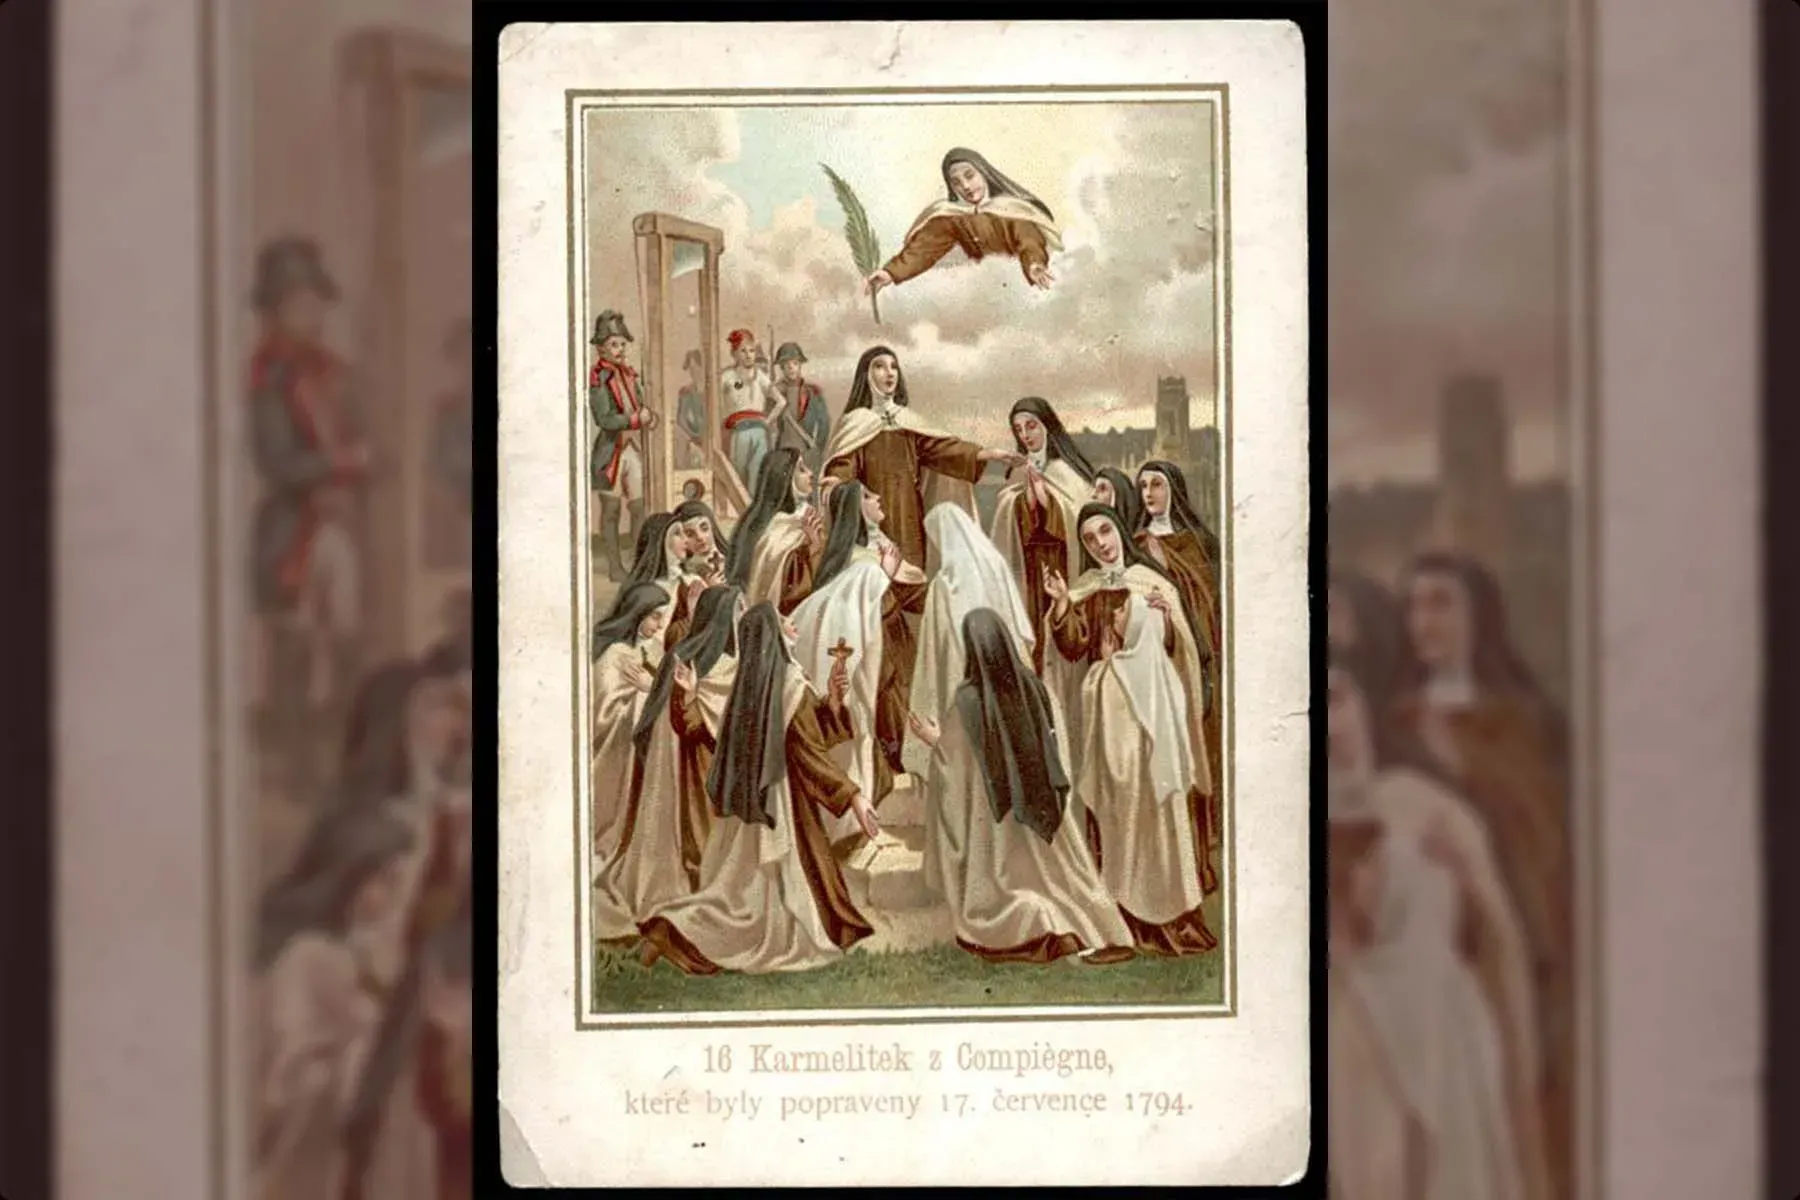 Les bienheureux martyrs de Compiègne ont été guillotinés pour leur foi le 17 juillet 1794. Photo d'illustration.